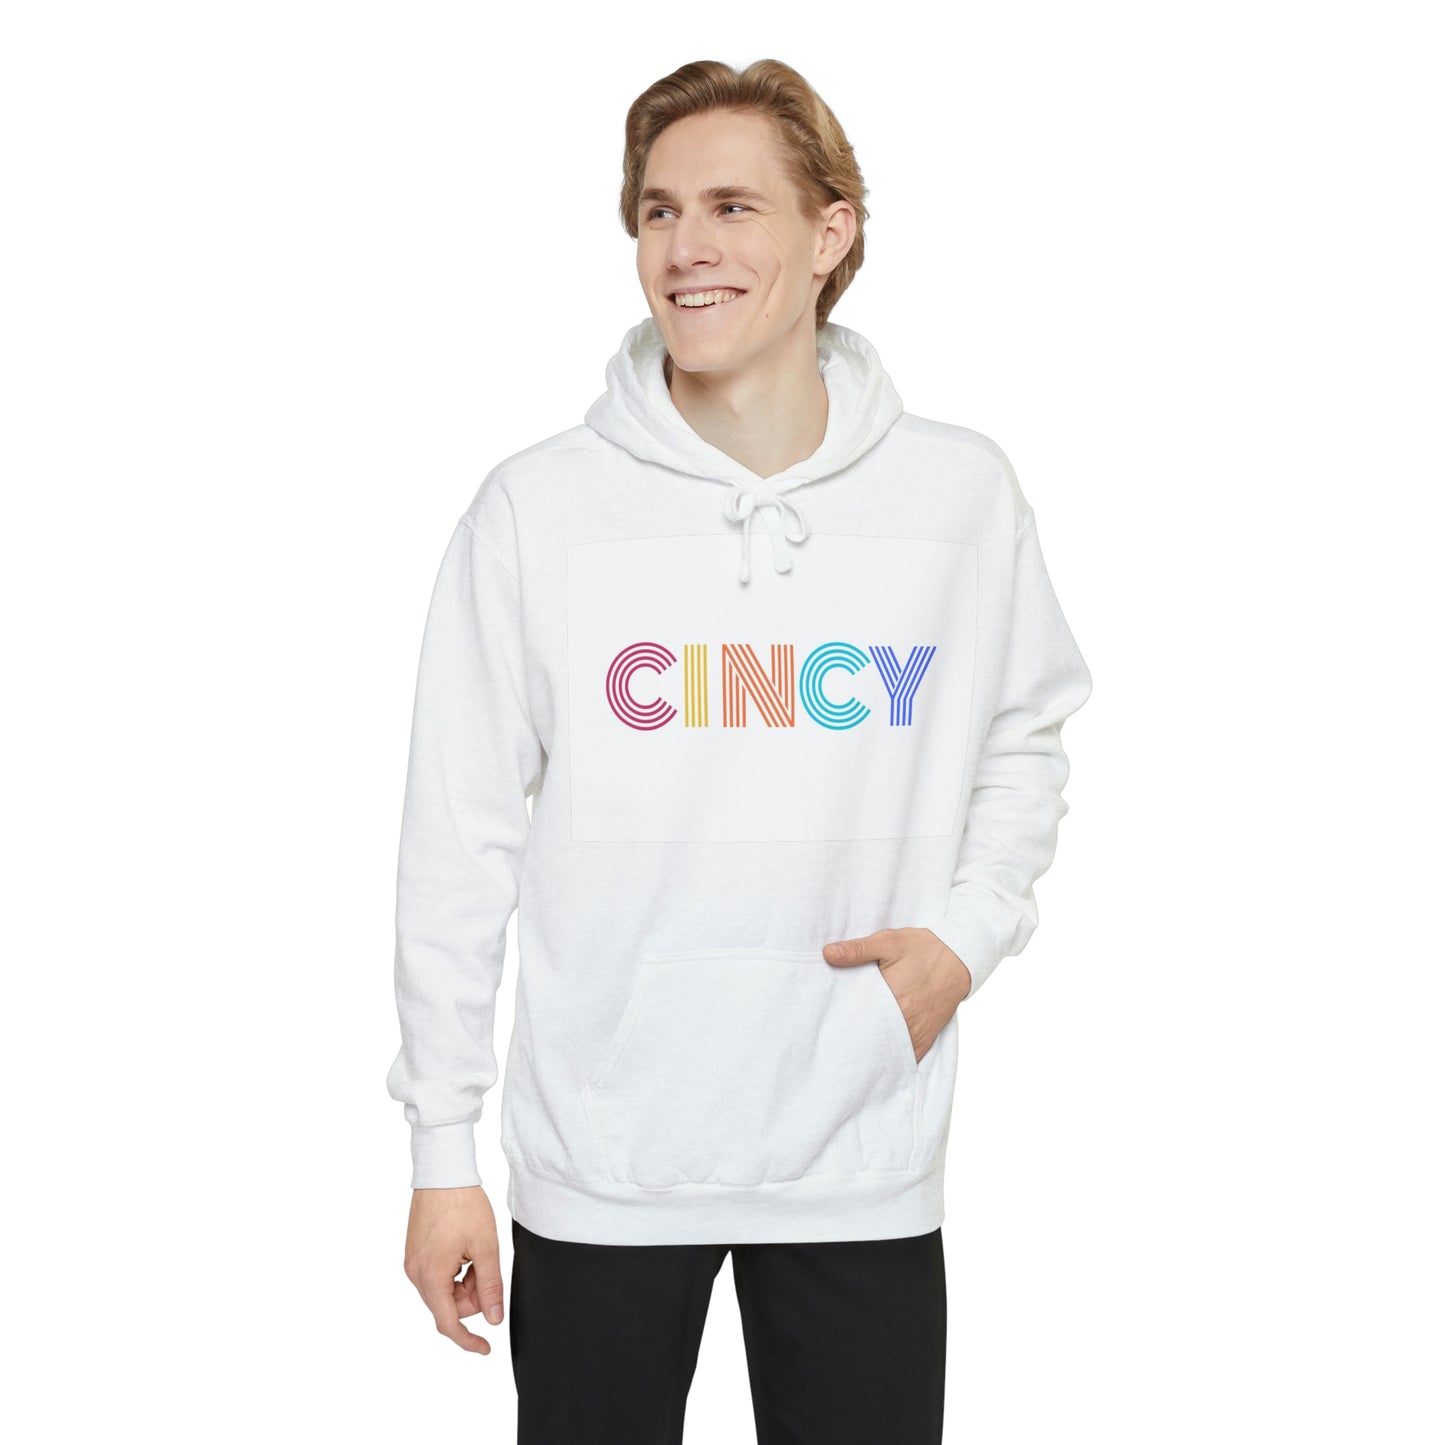 CINCY - Unisex Garment-Dyed Hoodie